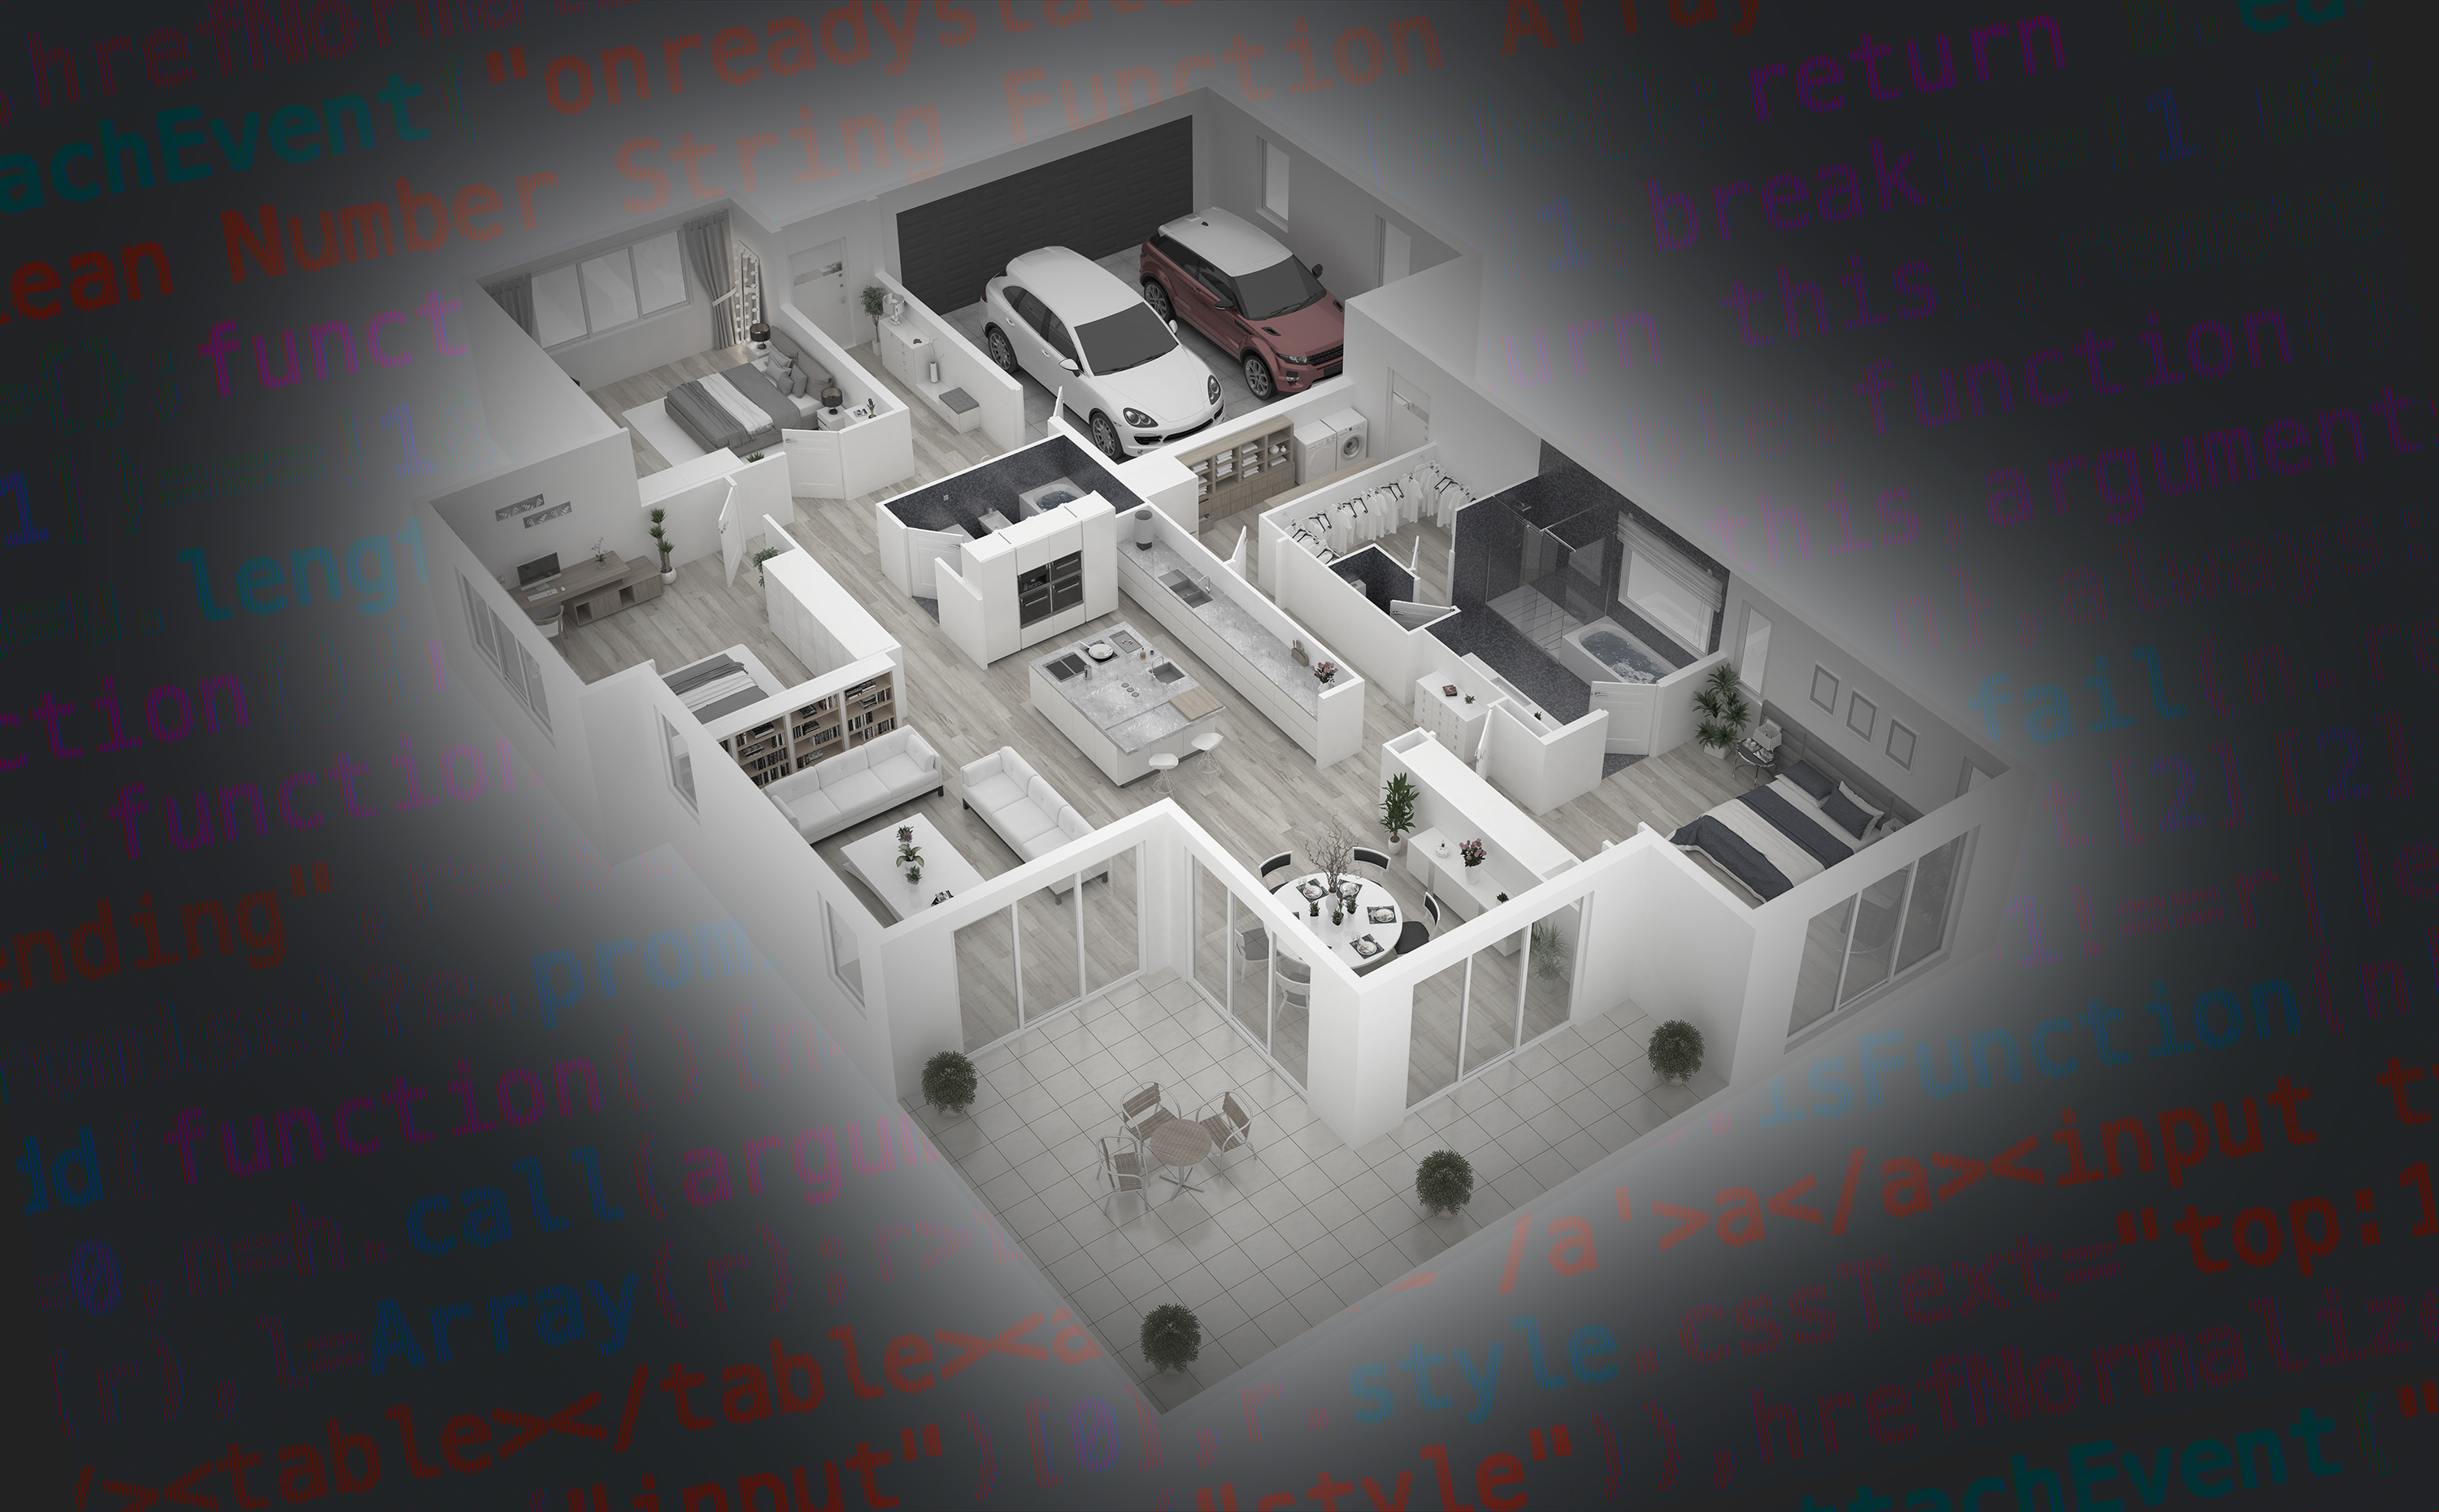 Home open floor plan model with code text